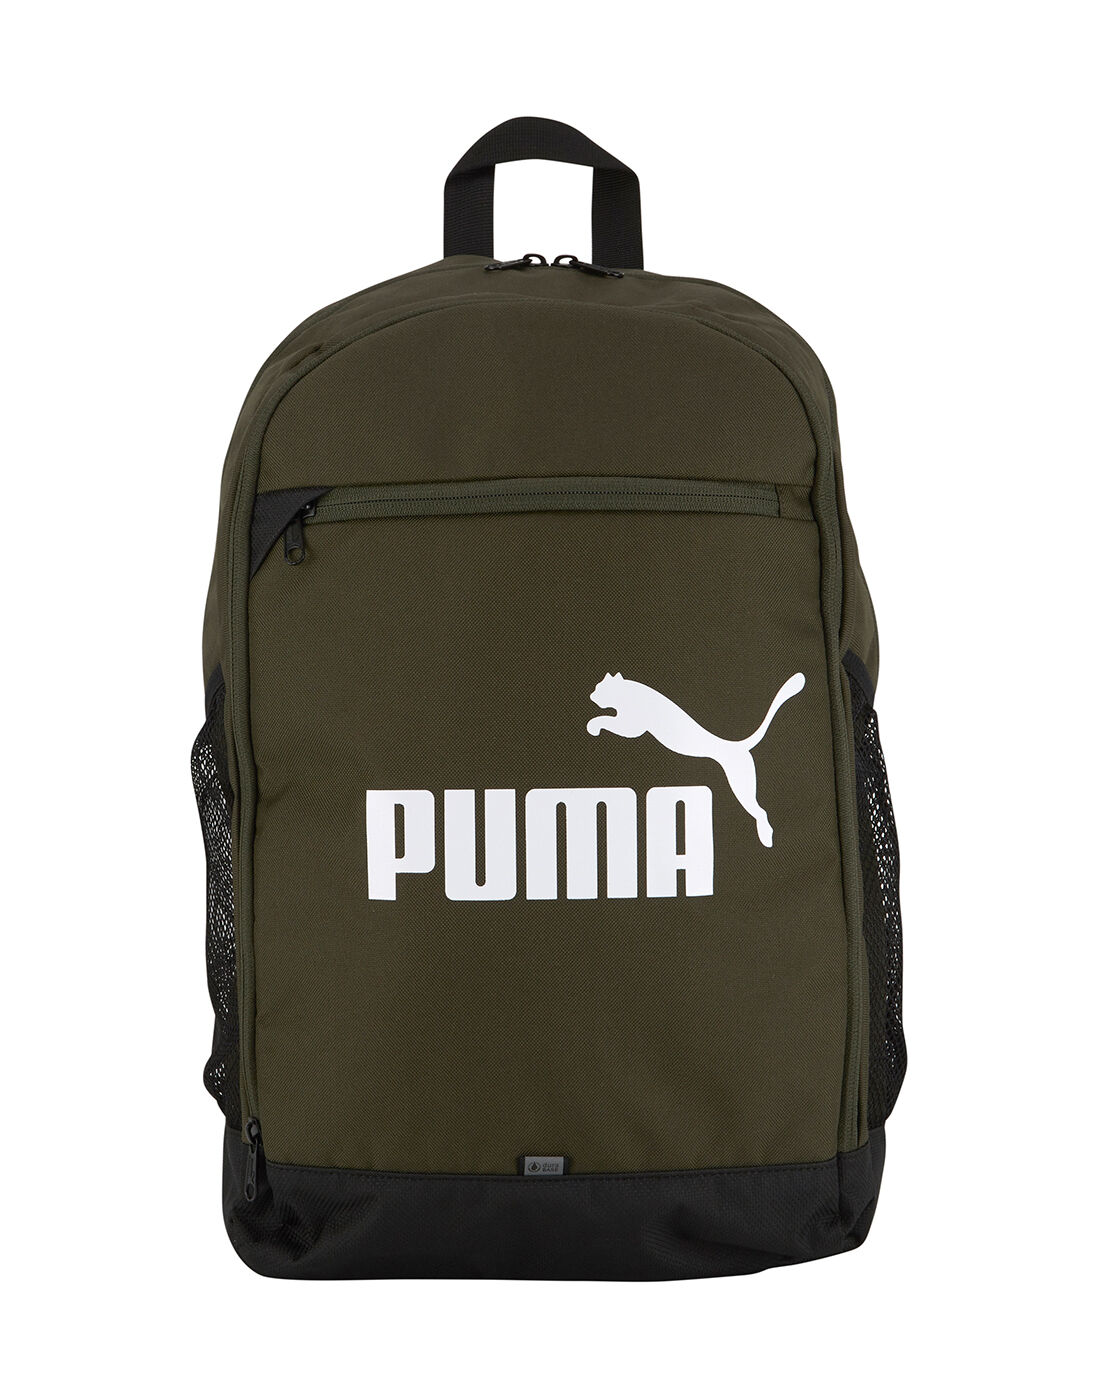 puma bag green